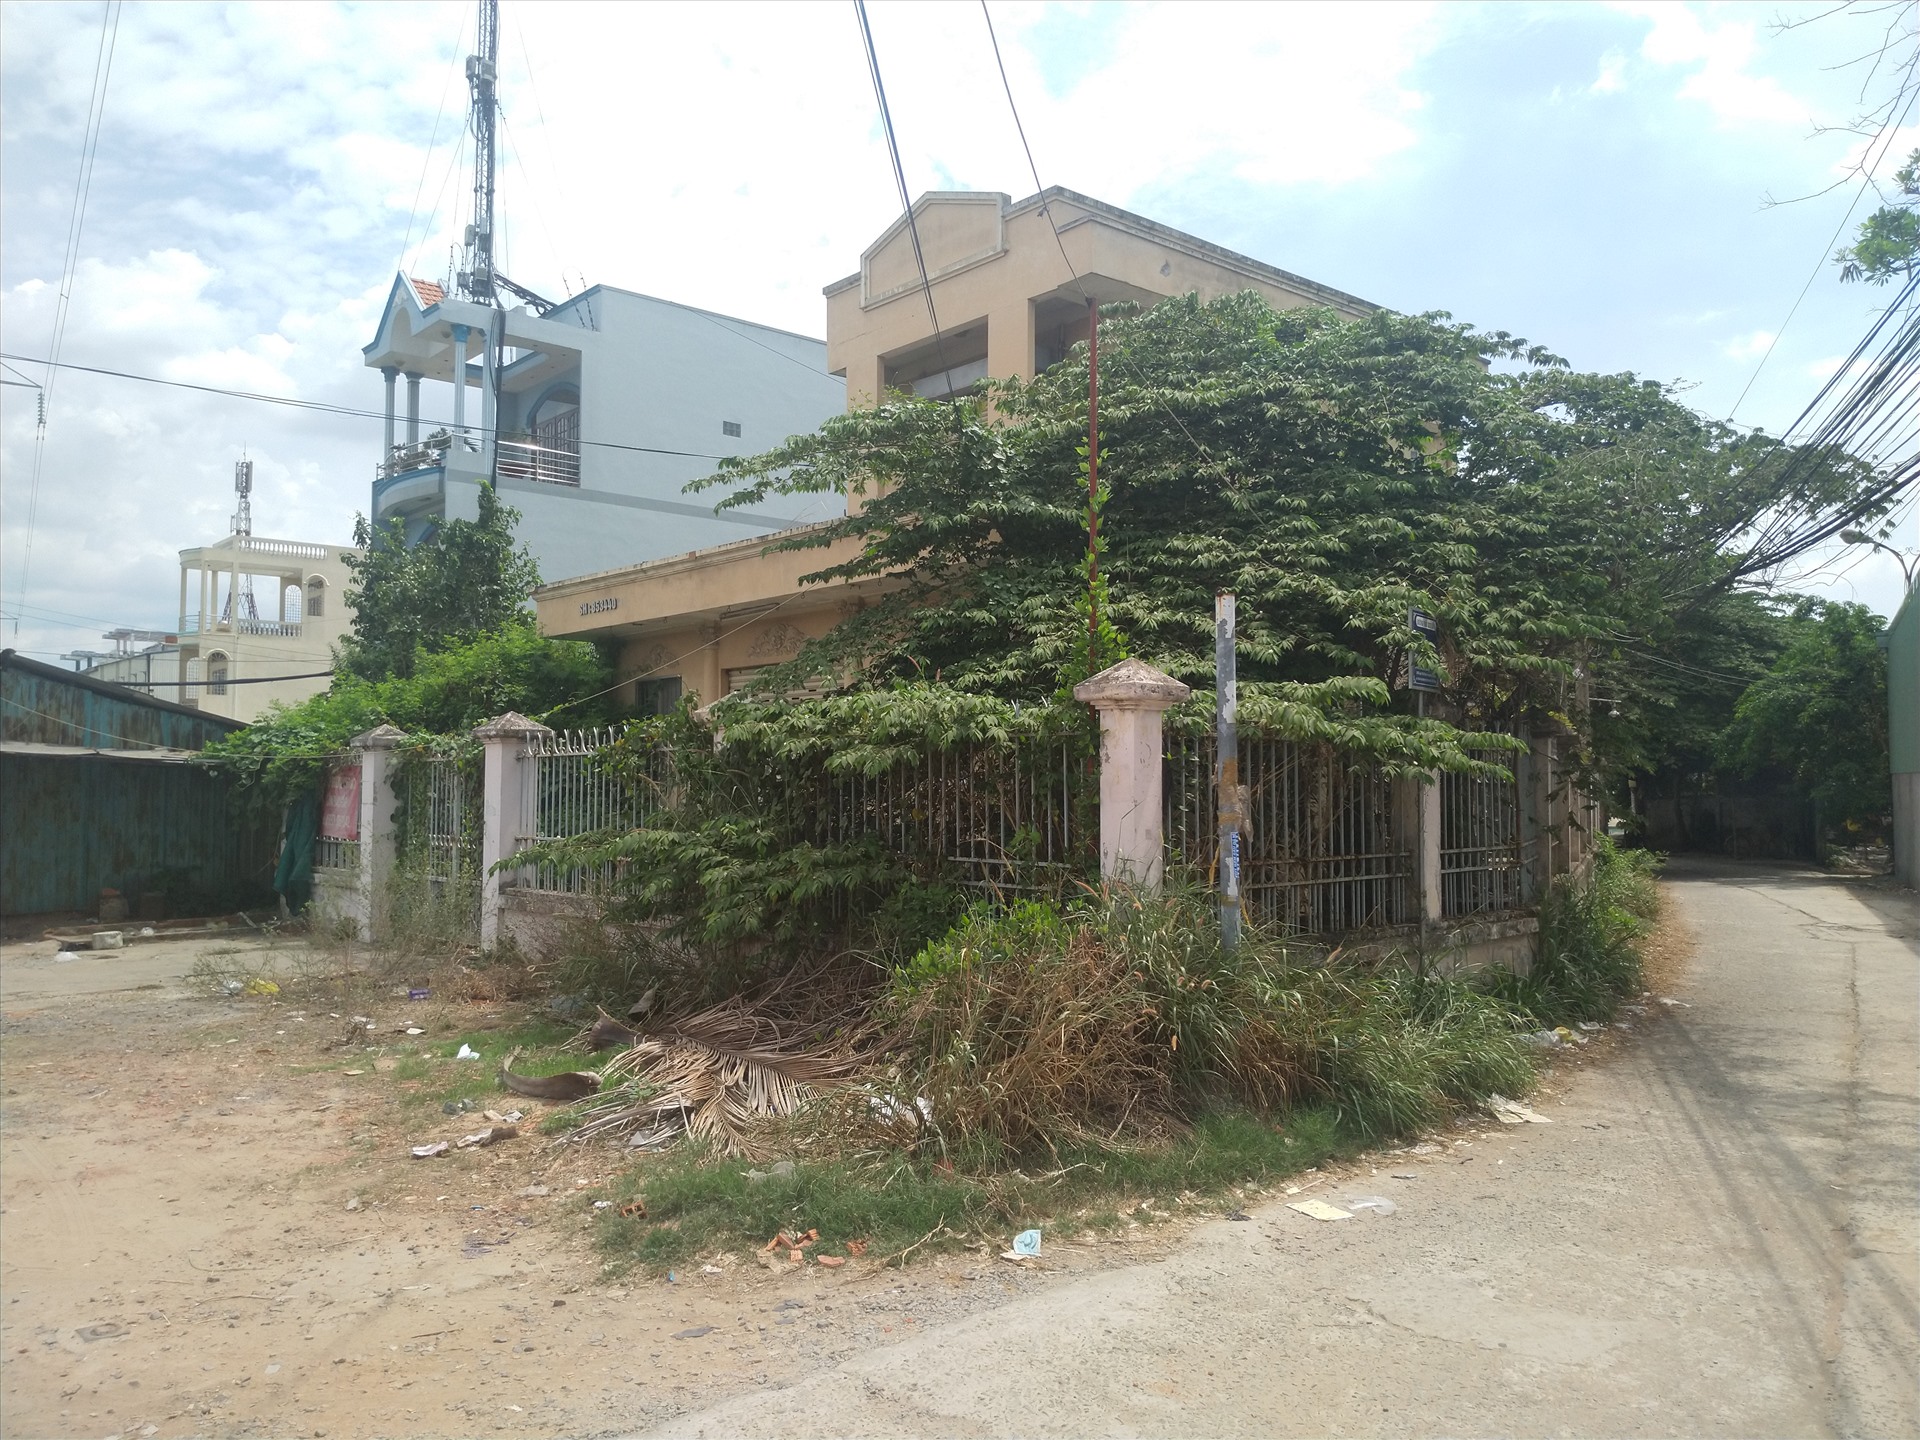 Bưu điện Cầu Voi, hiện trường nơi xảy ra vụ kỳ án tử tù Hồ Duy hải hiện đã bị cây cỏ phủ đầy sau 12 năm không hoạt động. Ảnh: K.Q